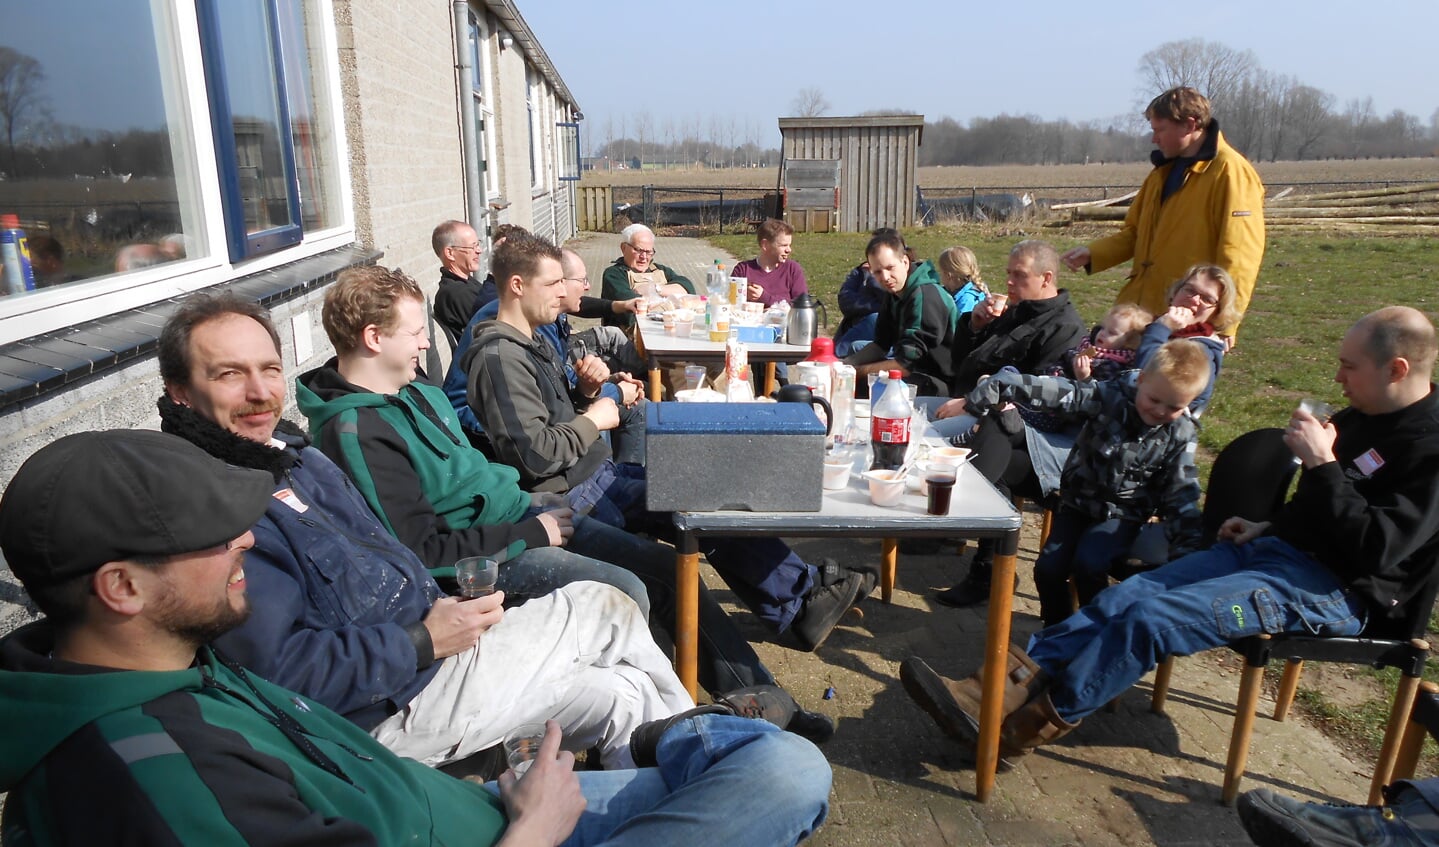 De vrijwilligers van Scouting Veghel genieten tussen het harde werken door in het zonnetje van een lunch.